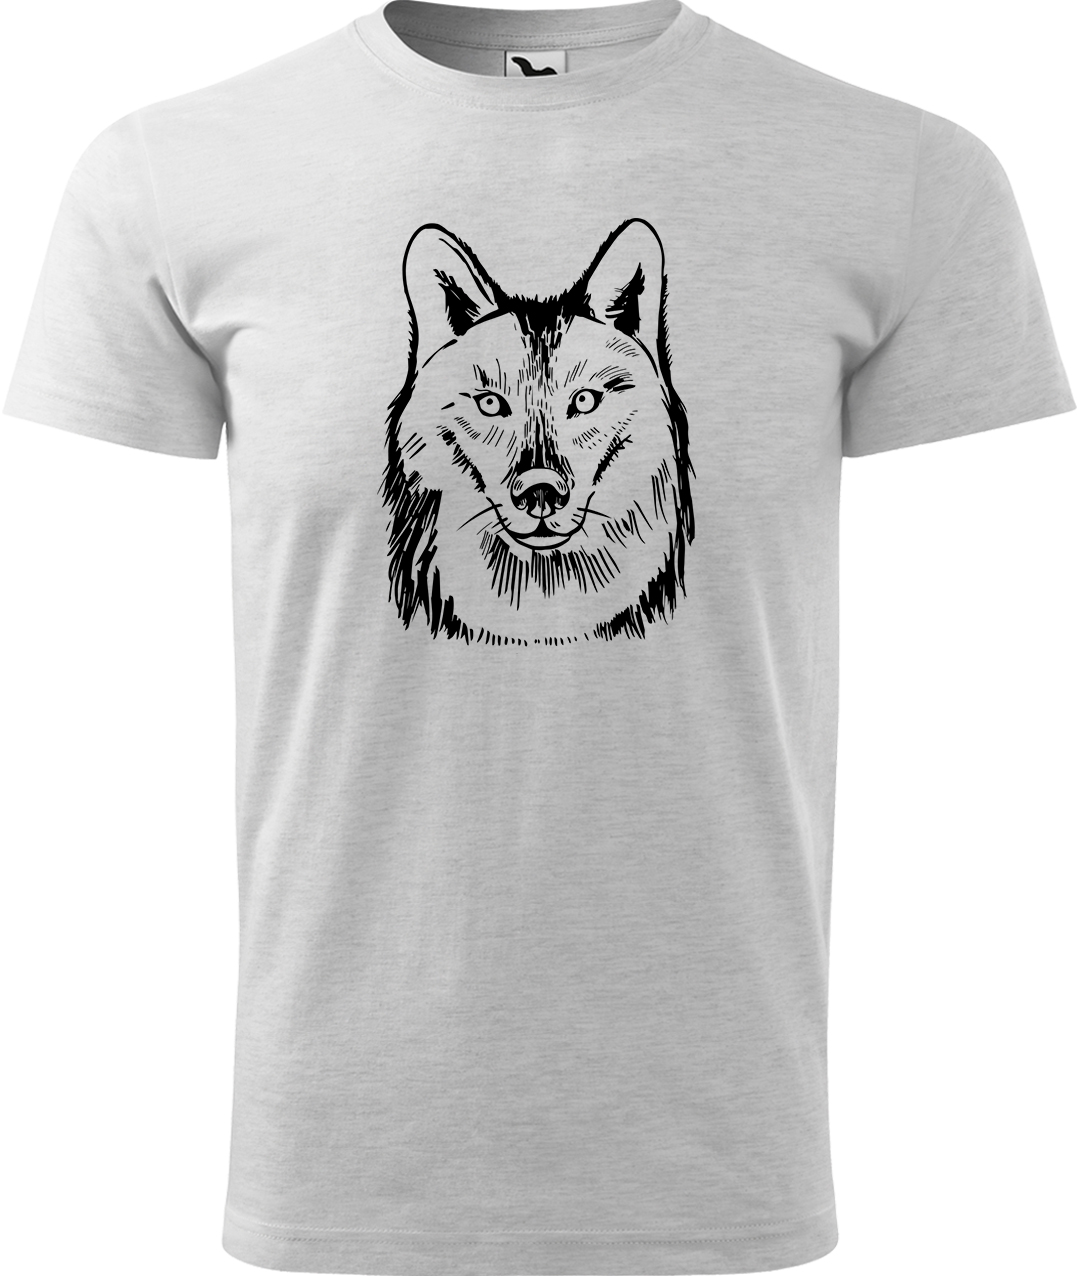 Pánské tričko s vlkem - Kresba vlka Velikost: S, Barva: Světle šedý melír (03), Střih: pánský